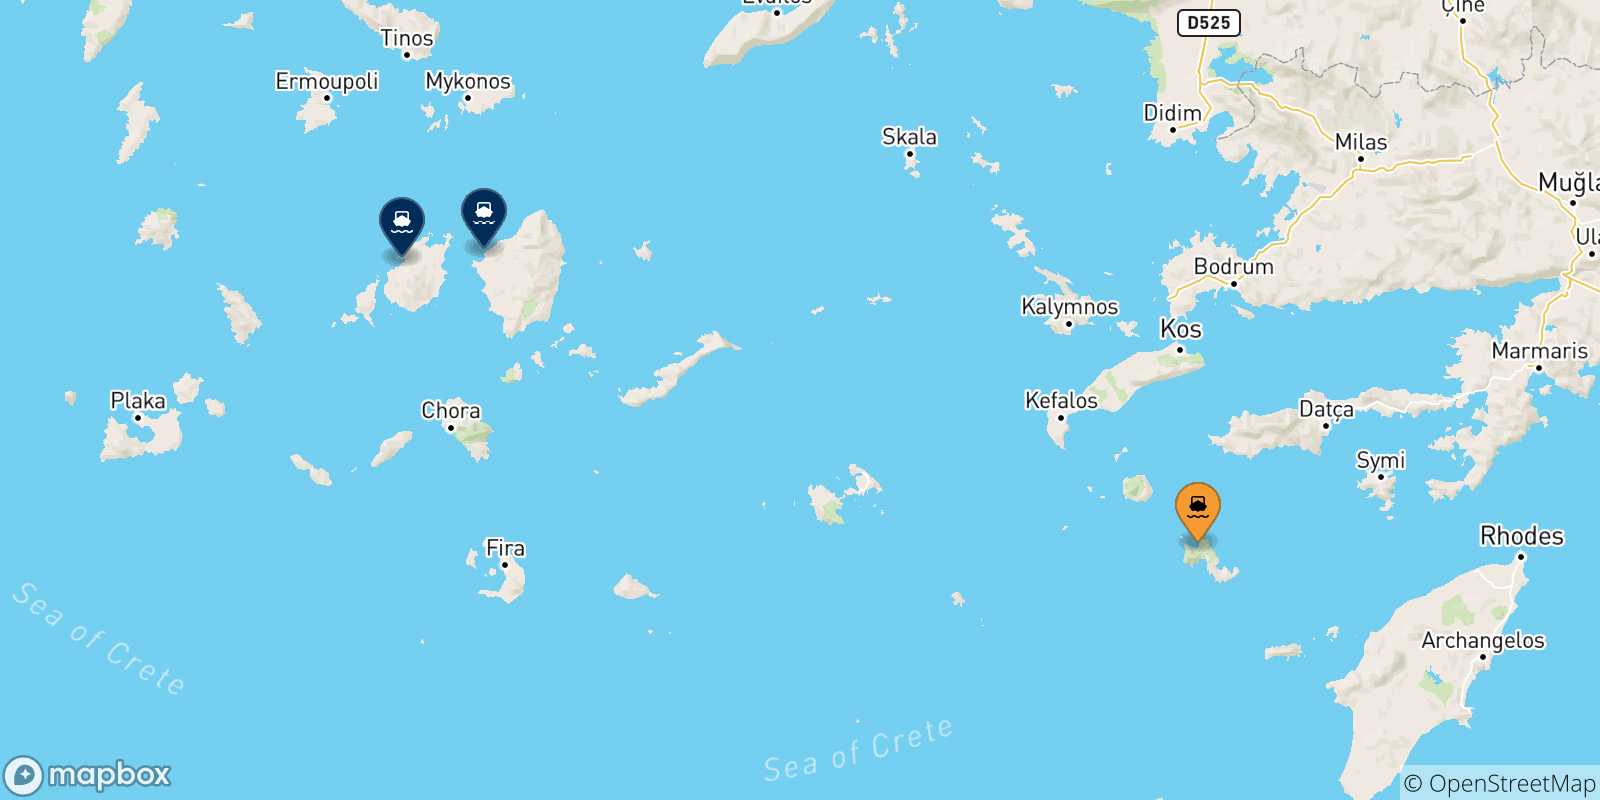 Mappa delle possibili rotte tra Tilos e le Isole Cicladi